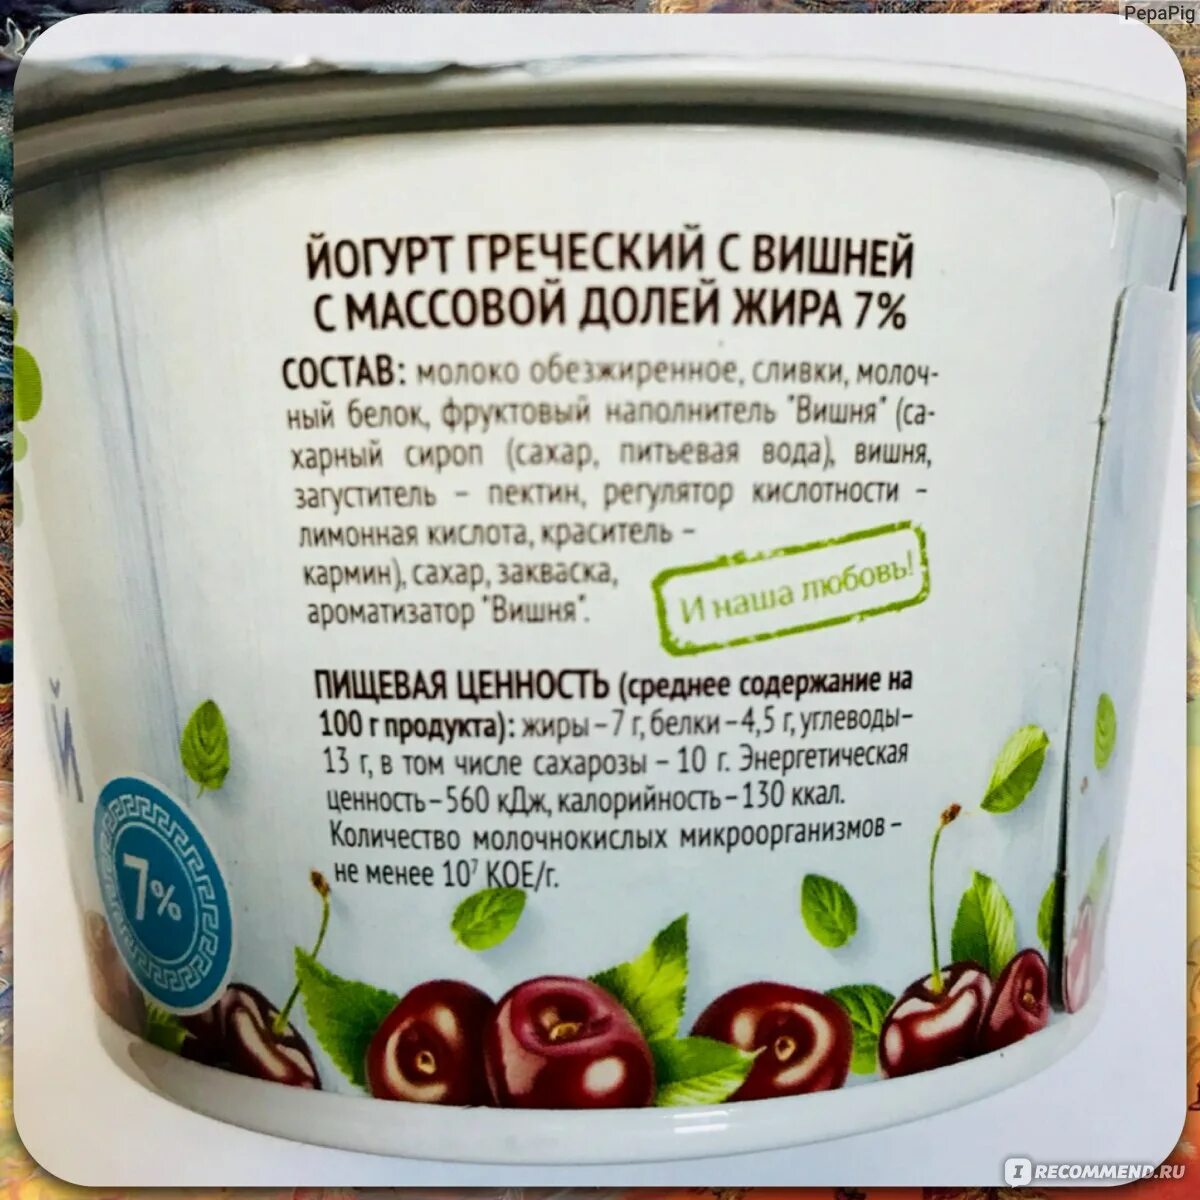 Польза греческого йогурта. Энергетическая ценность йогурта. Состав йогурта. Йогурт в упаковке. Пищевая ценность йогурта в 100 граммах.